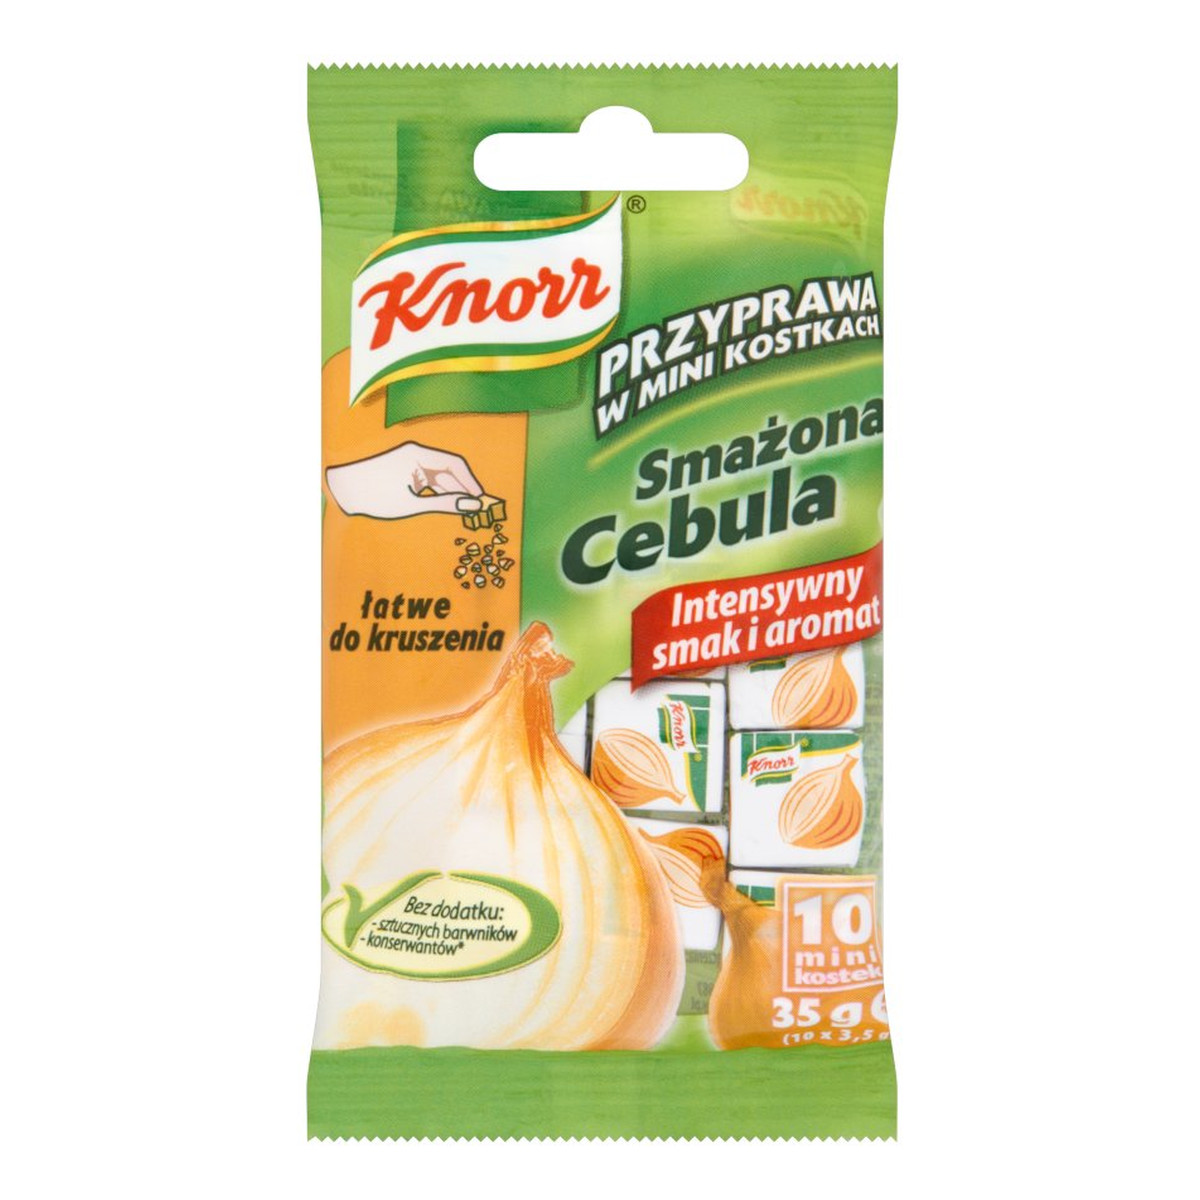 Knorr Przyprawa w mini kostkach Smażona cebula (10 mini kostek) 35g